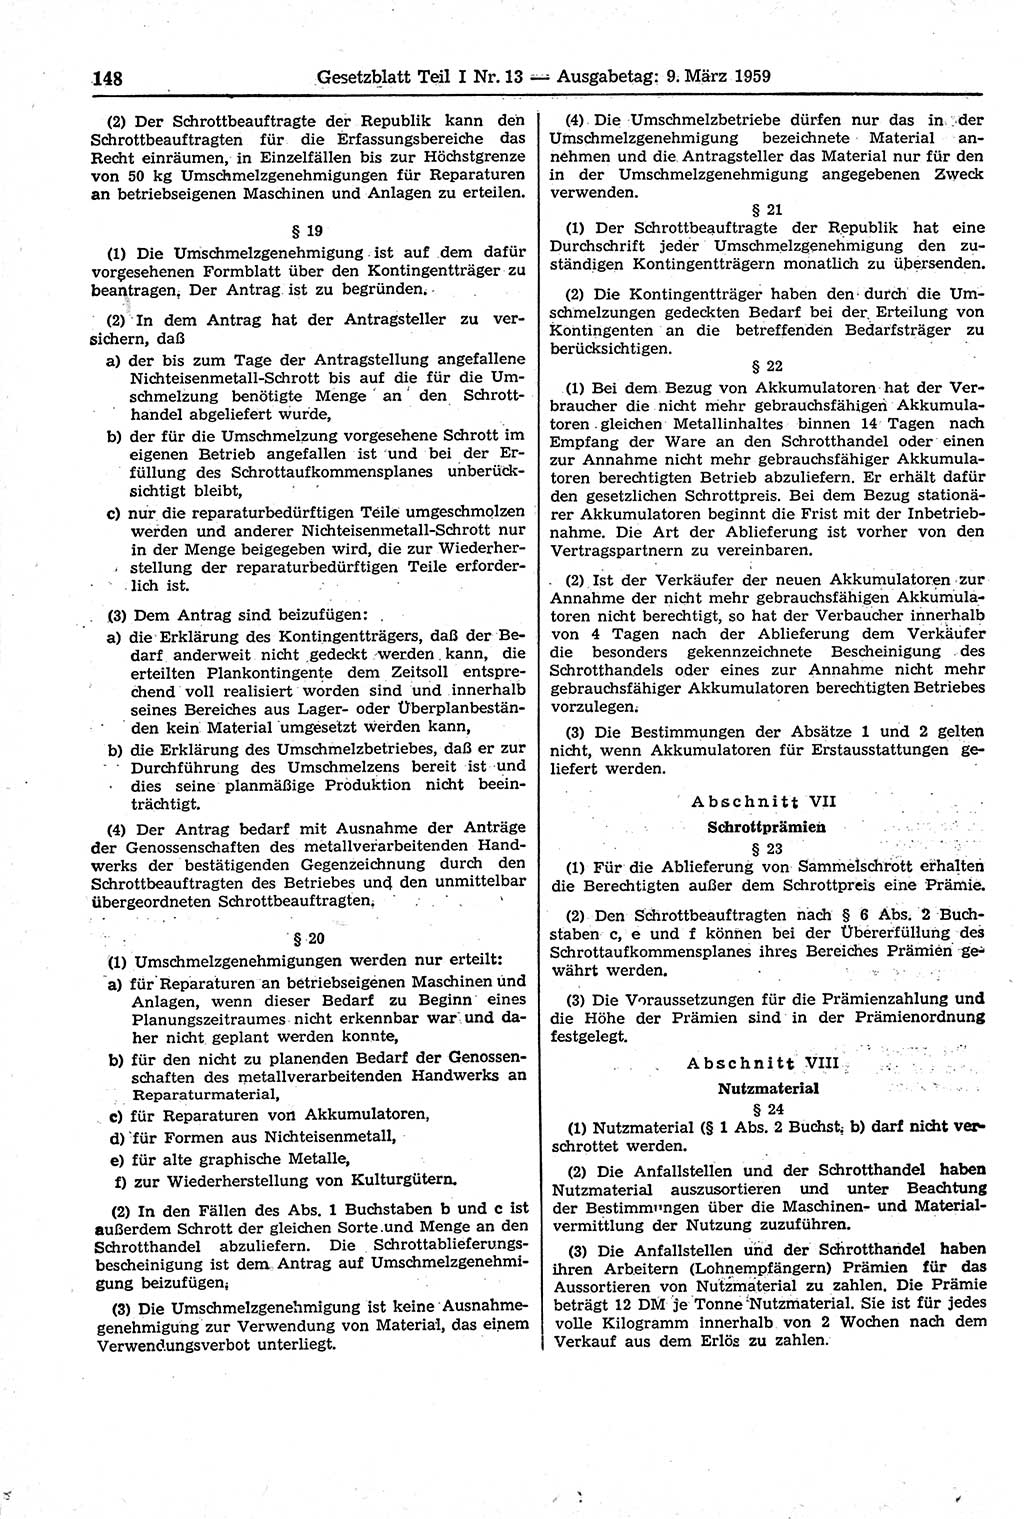 Gesetzblatt (GBl.) der Deutschen Demokratischen Republik (DDR) Teil Ⅰ 1959, Seite 148 (GBl. DDR Ⅰ 1959, S. 148)